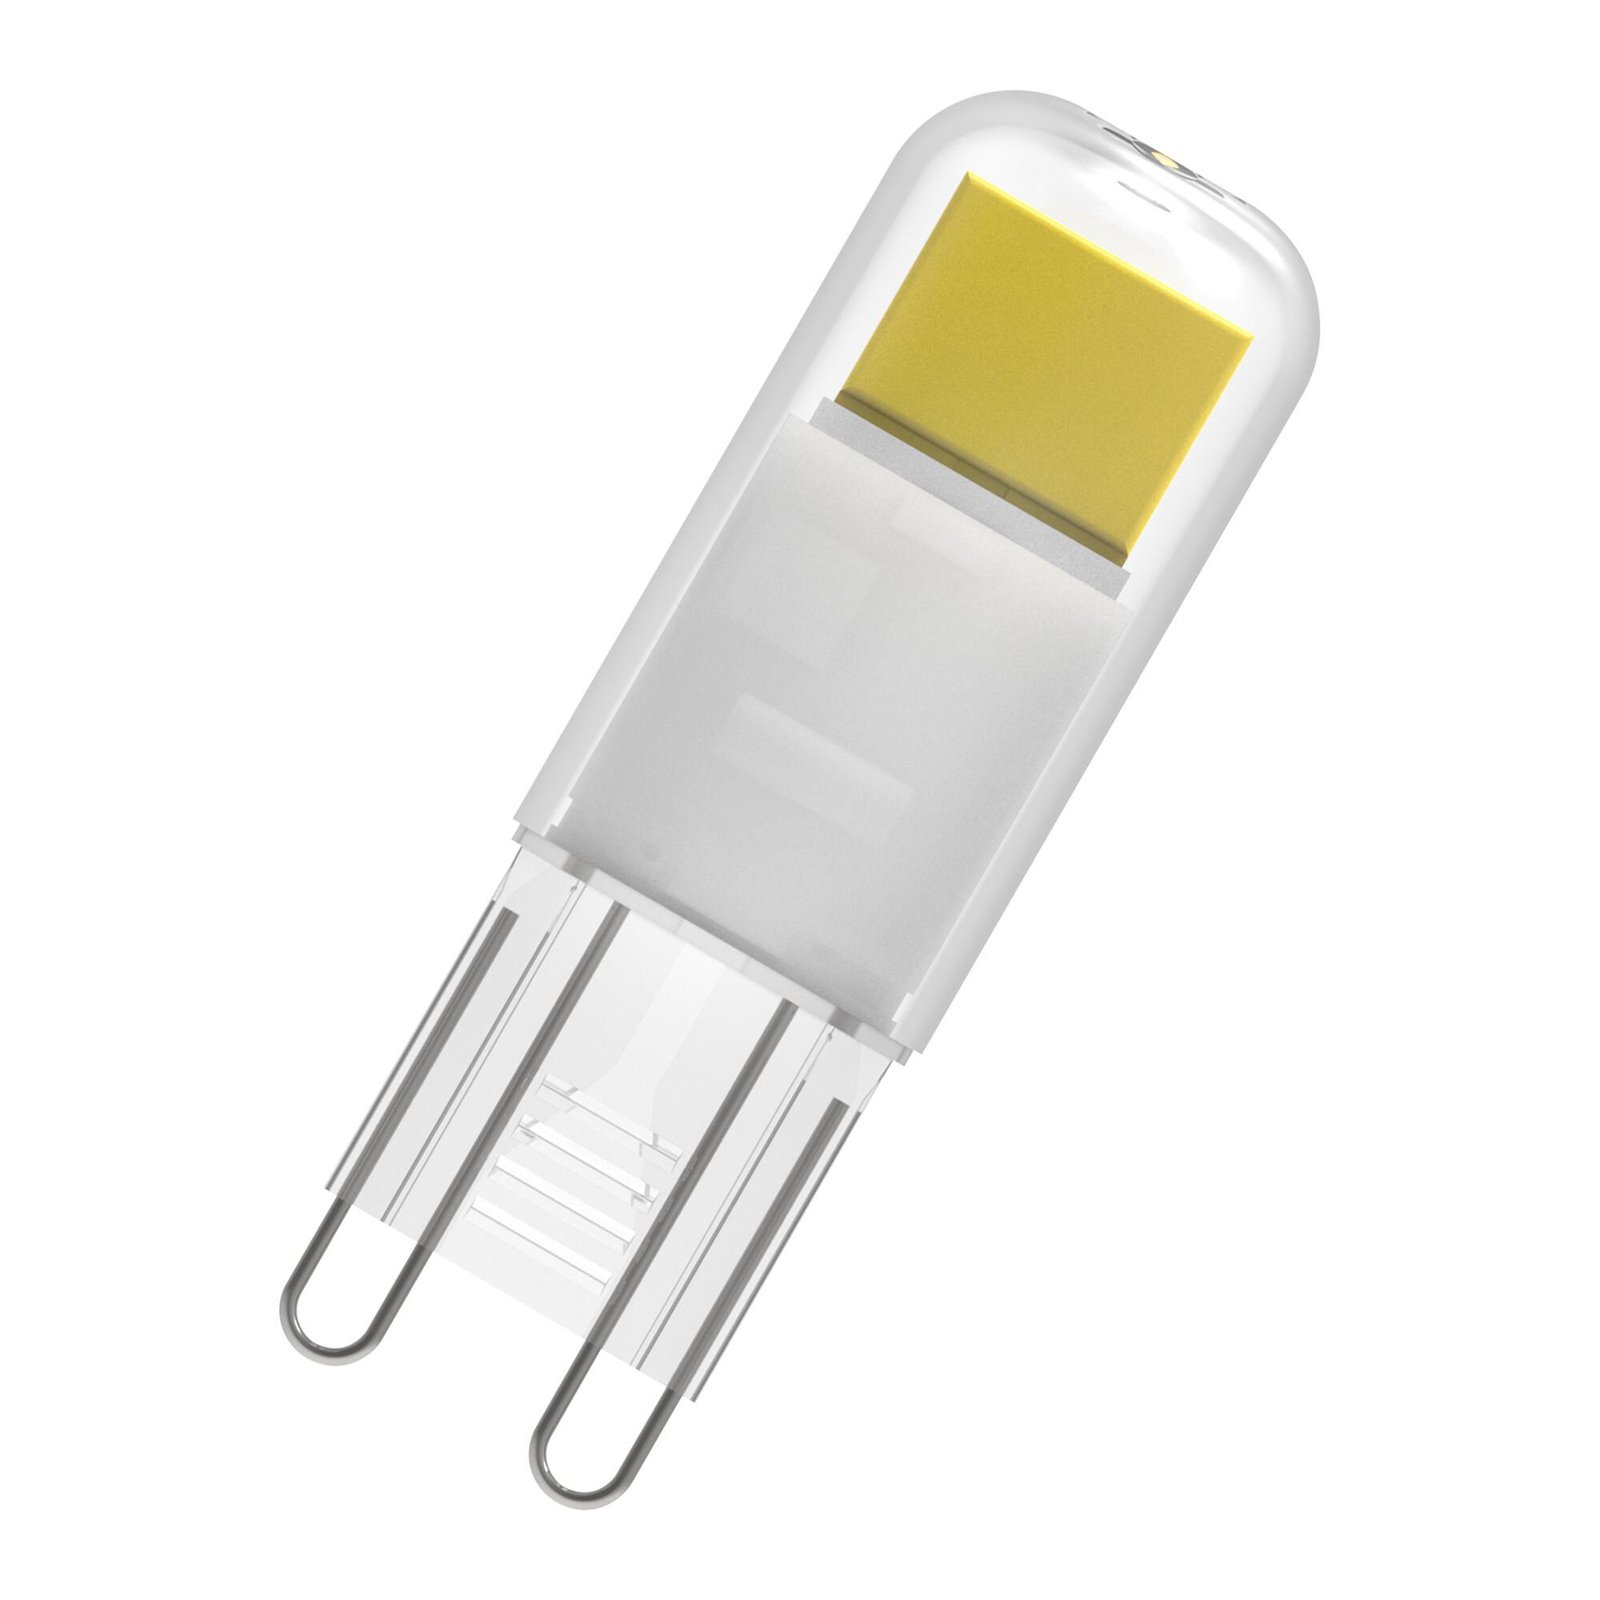 OSRAM LED stiftlamp G9 1,8 W helder 2.700 K